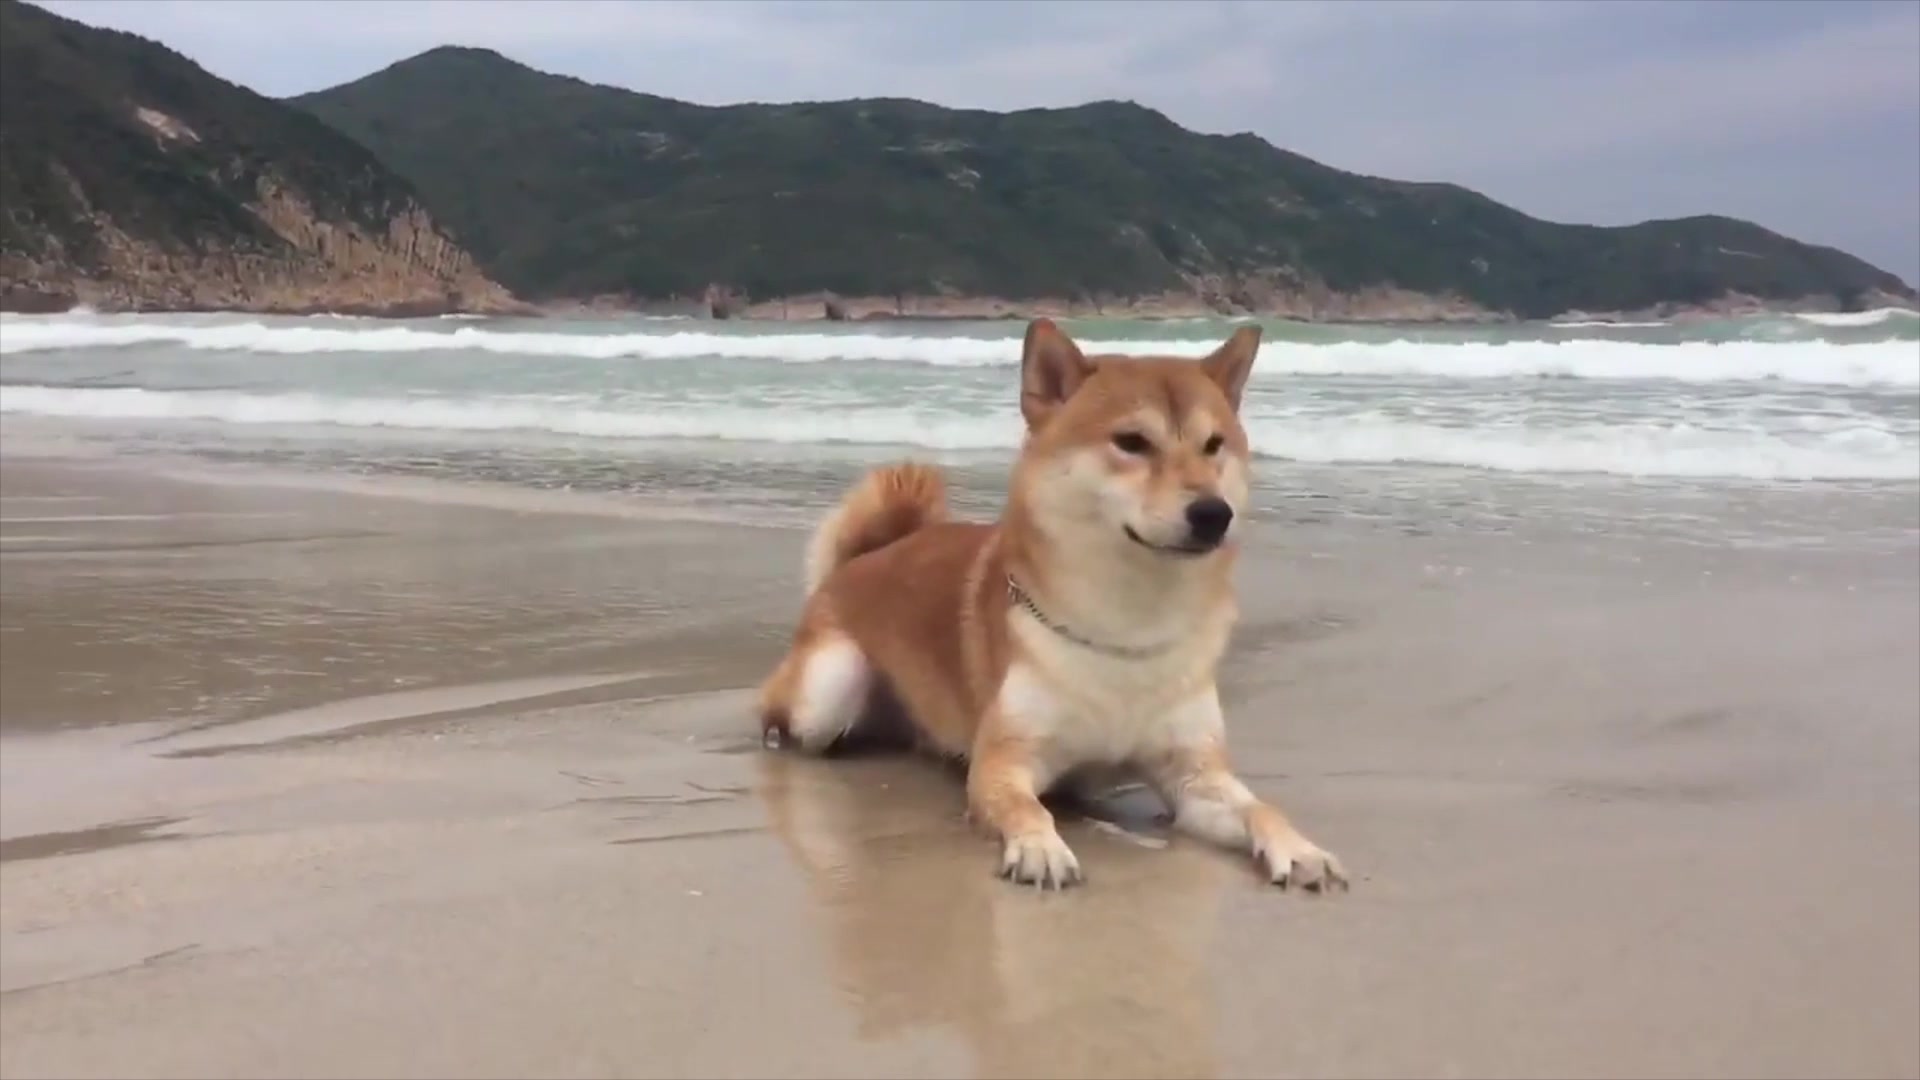 柴犬带着墨镜在沙滩上面度假很享受,沙浴游泳看起来很解压